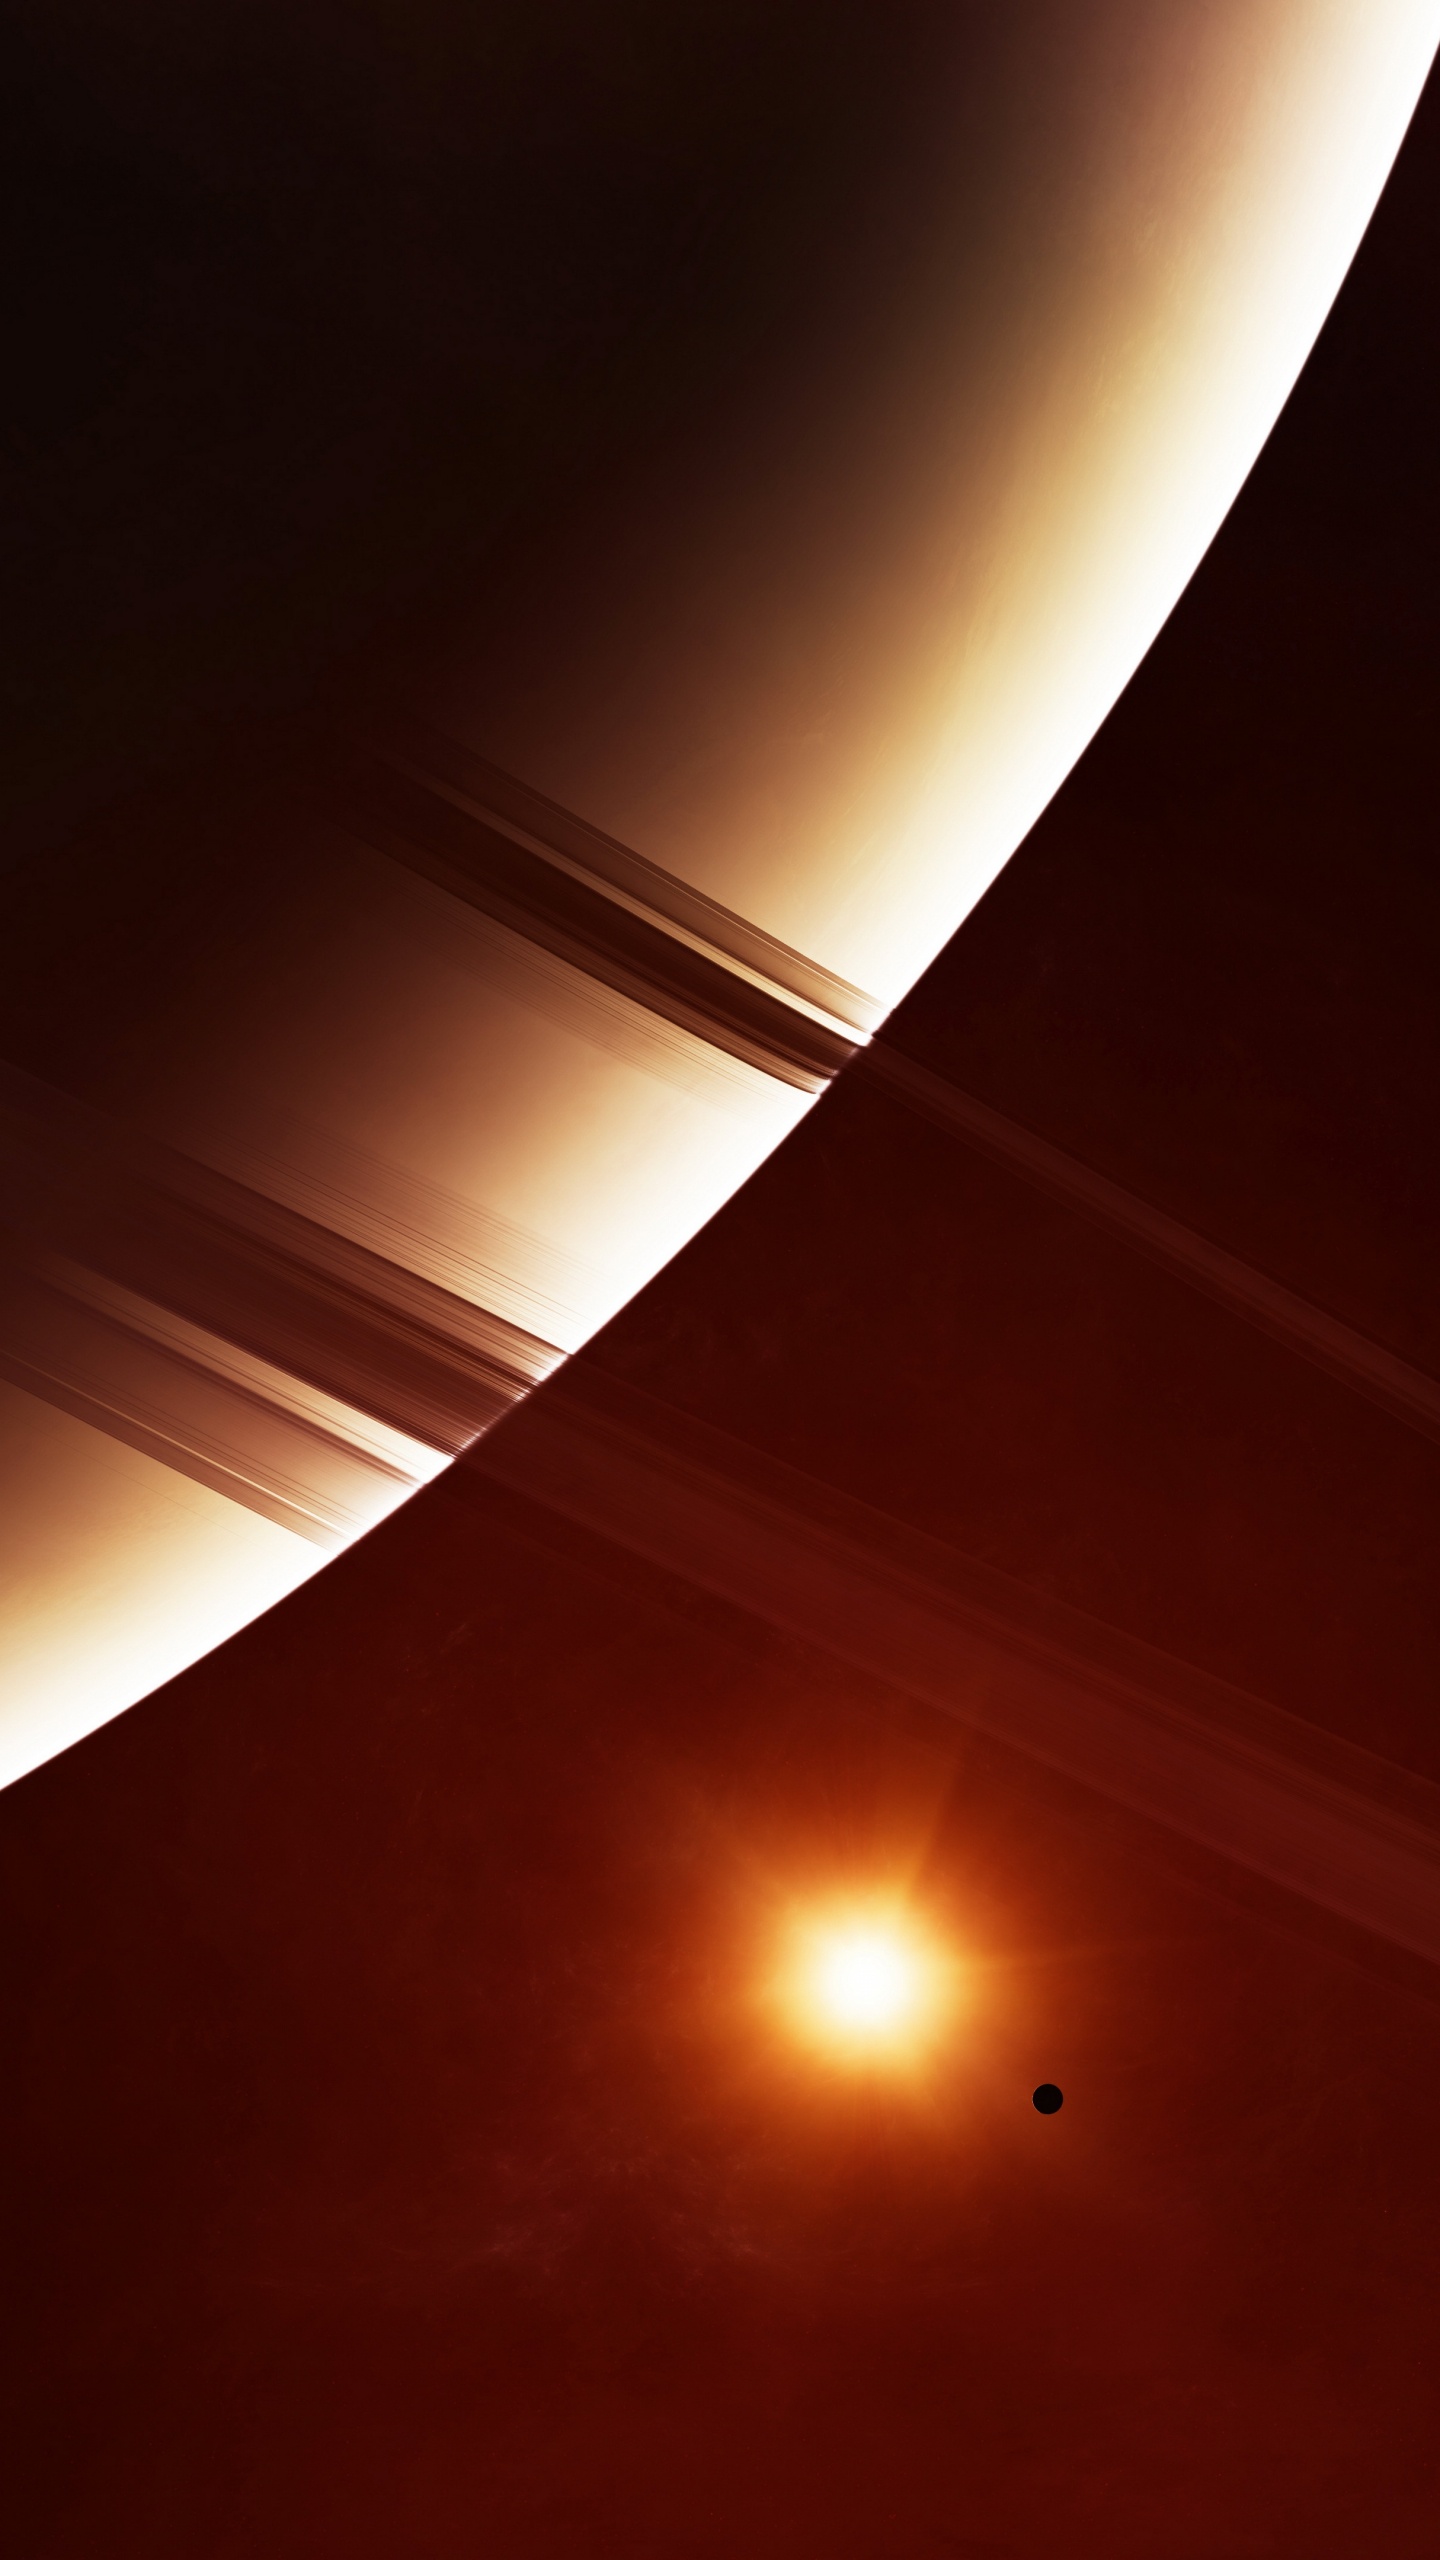 环系统, 土星, 这个星球, 天文学对象, 光 壁纸 1440x2560 允许